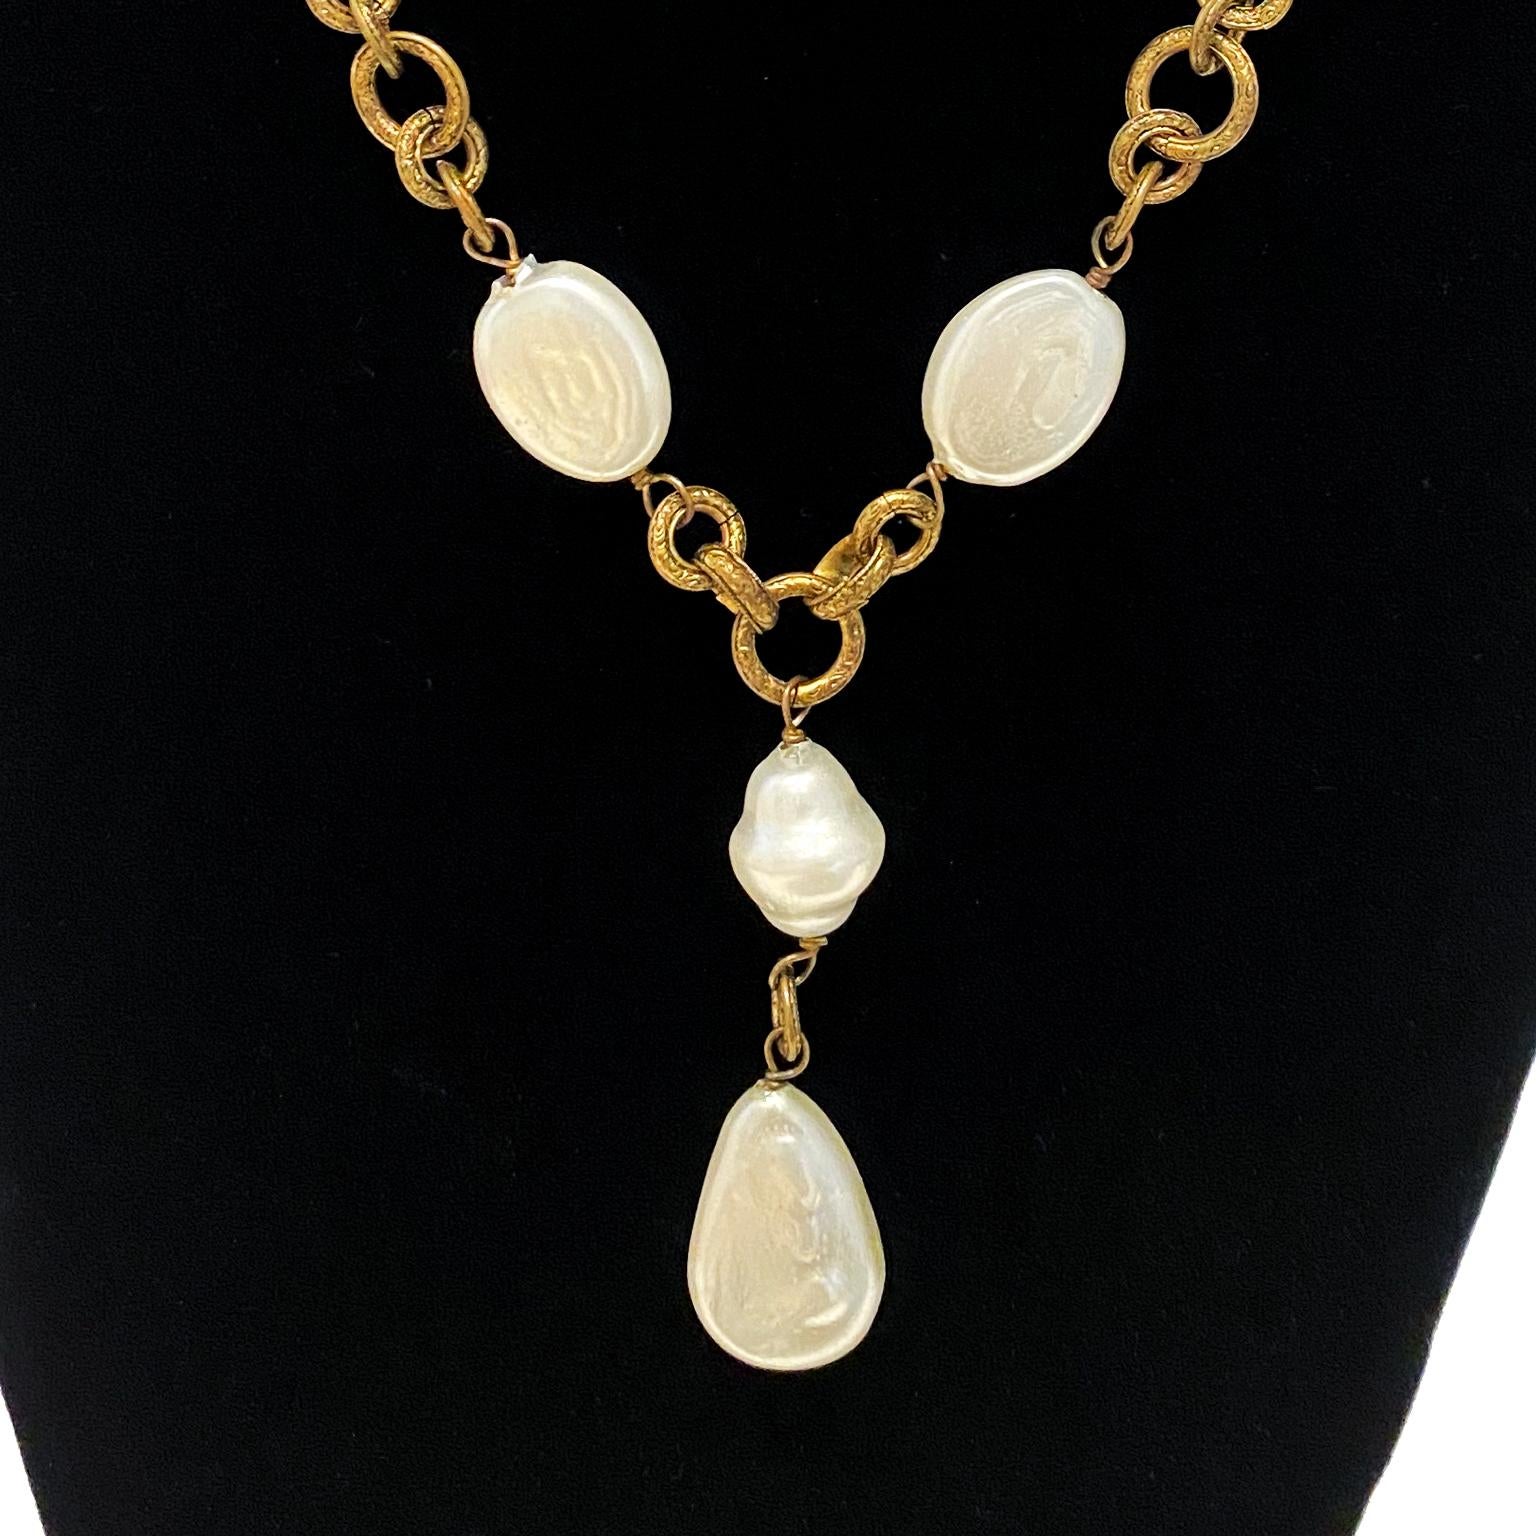 Chanel 1985, collier de chaîne en métal doré et perles plates de forme naturelle avec chute de perles. Belle patine de la chaîne à trois maillons gravés. Les perles sont en excellent état et ne présentent aucun signe de dommage ou d'usure